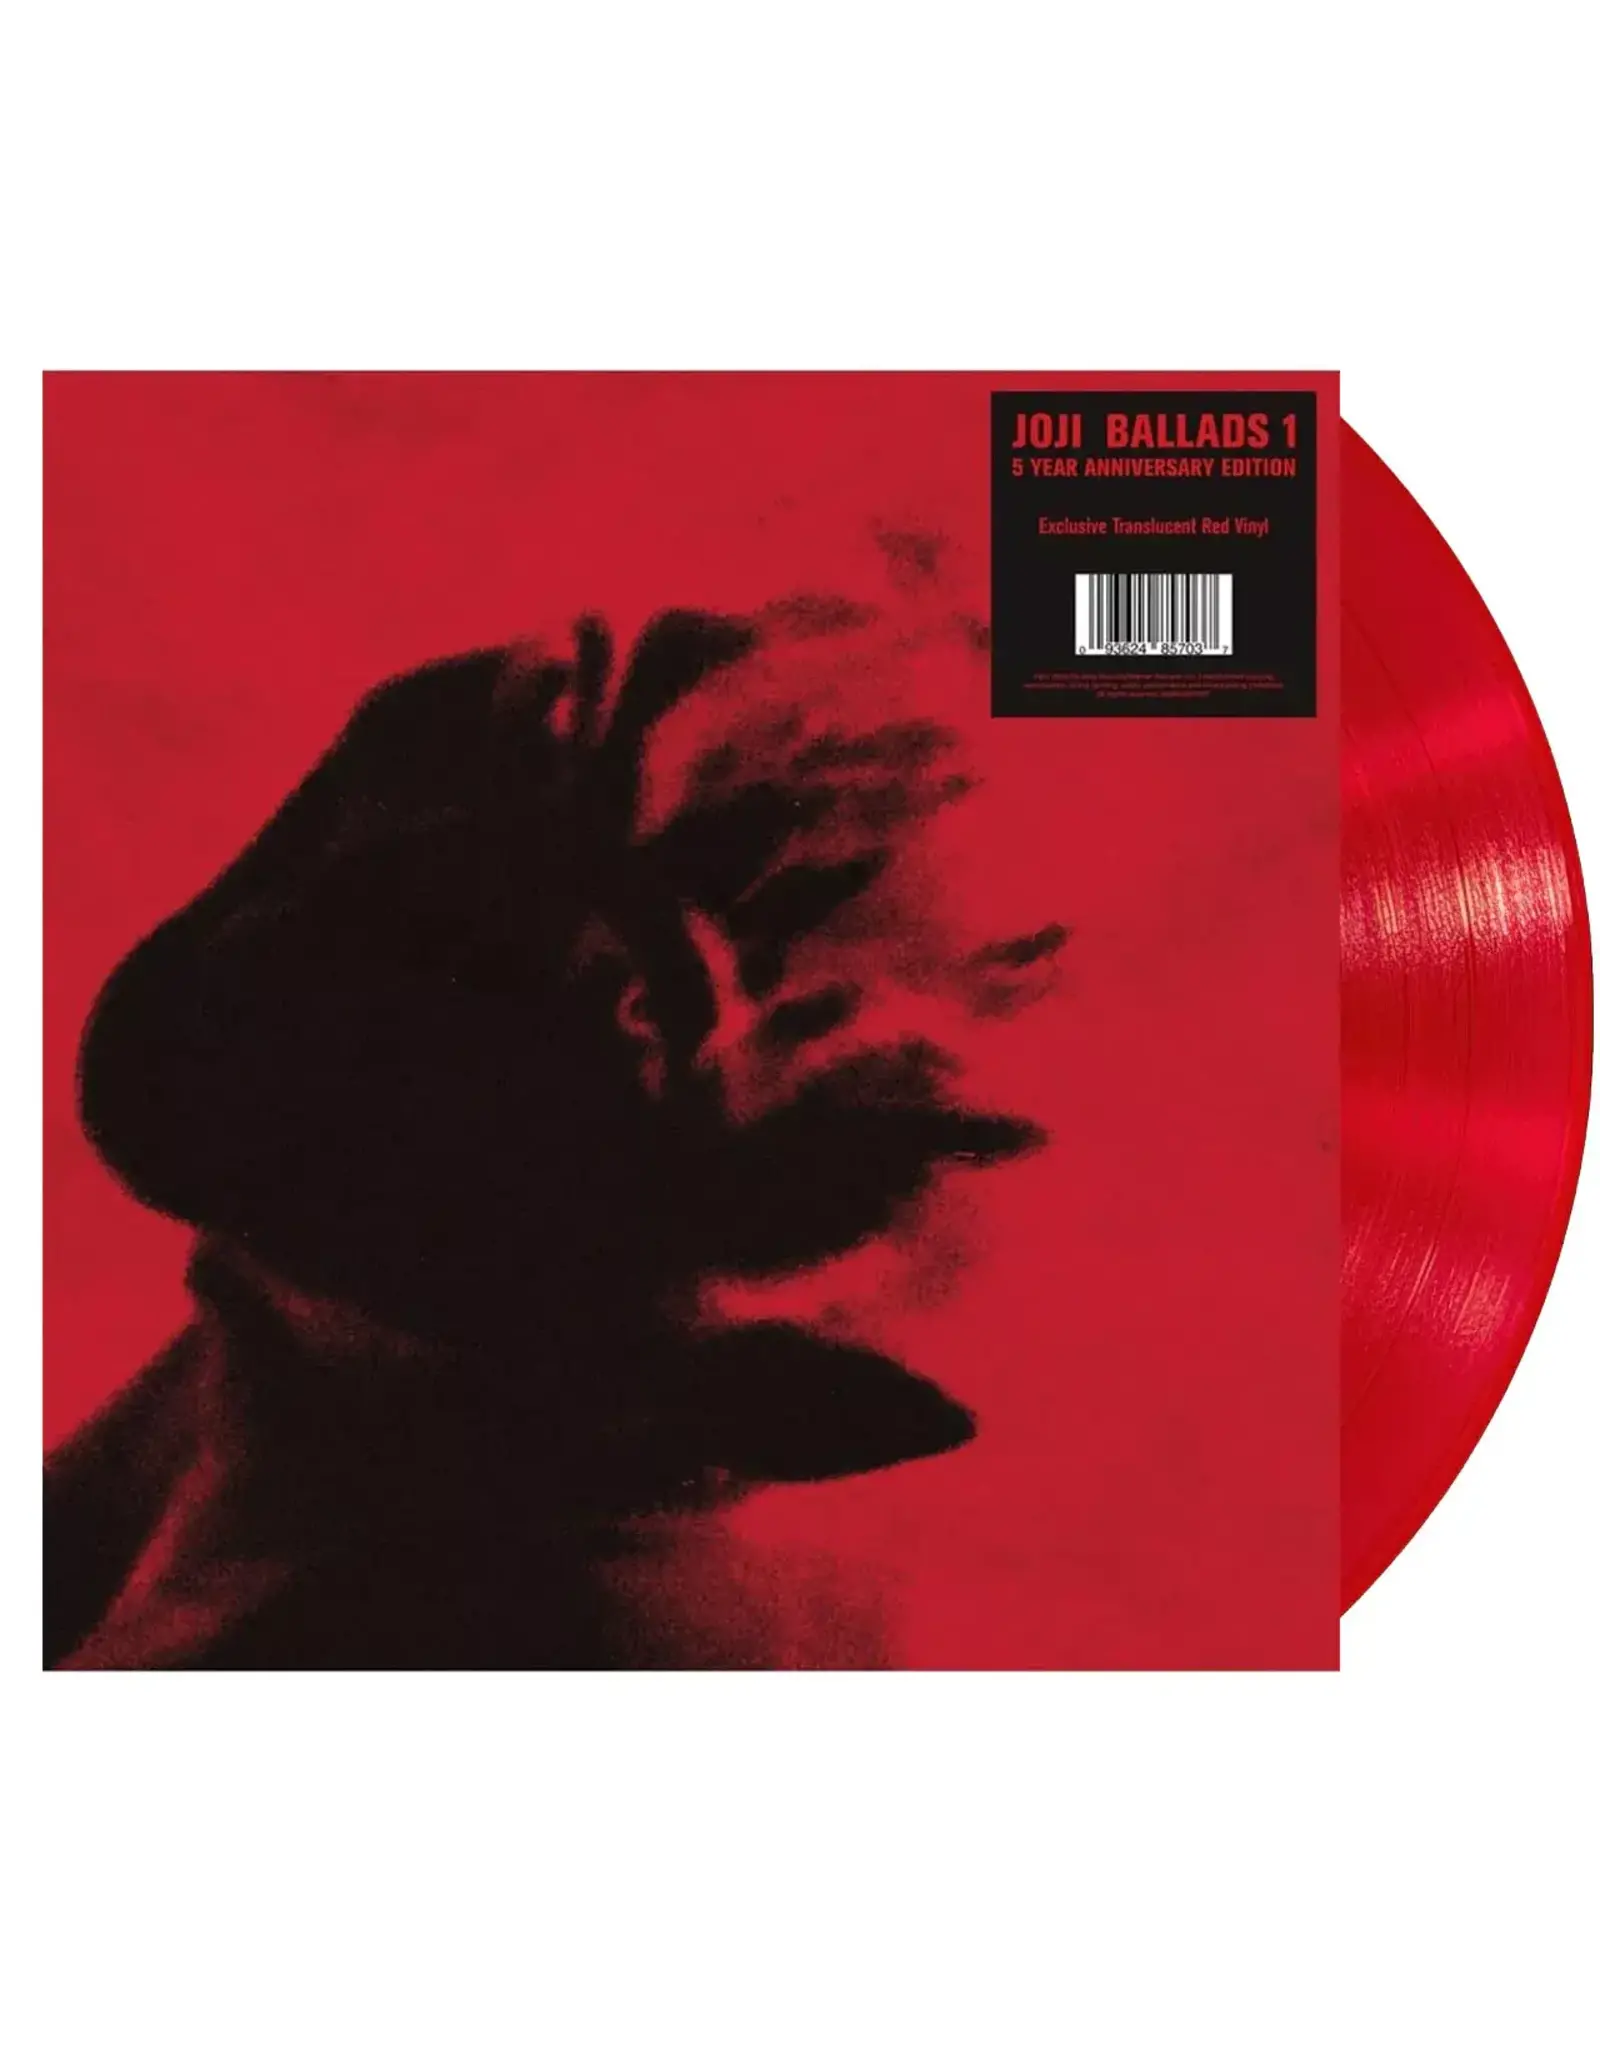 Joji - Ballads 1 (5th Anniversary) [Exclusive Translucent Red Vinyl]